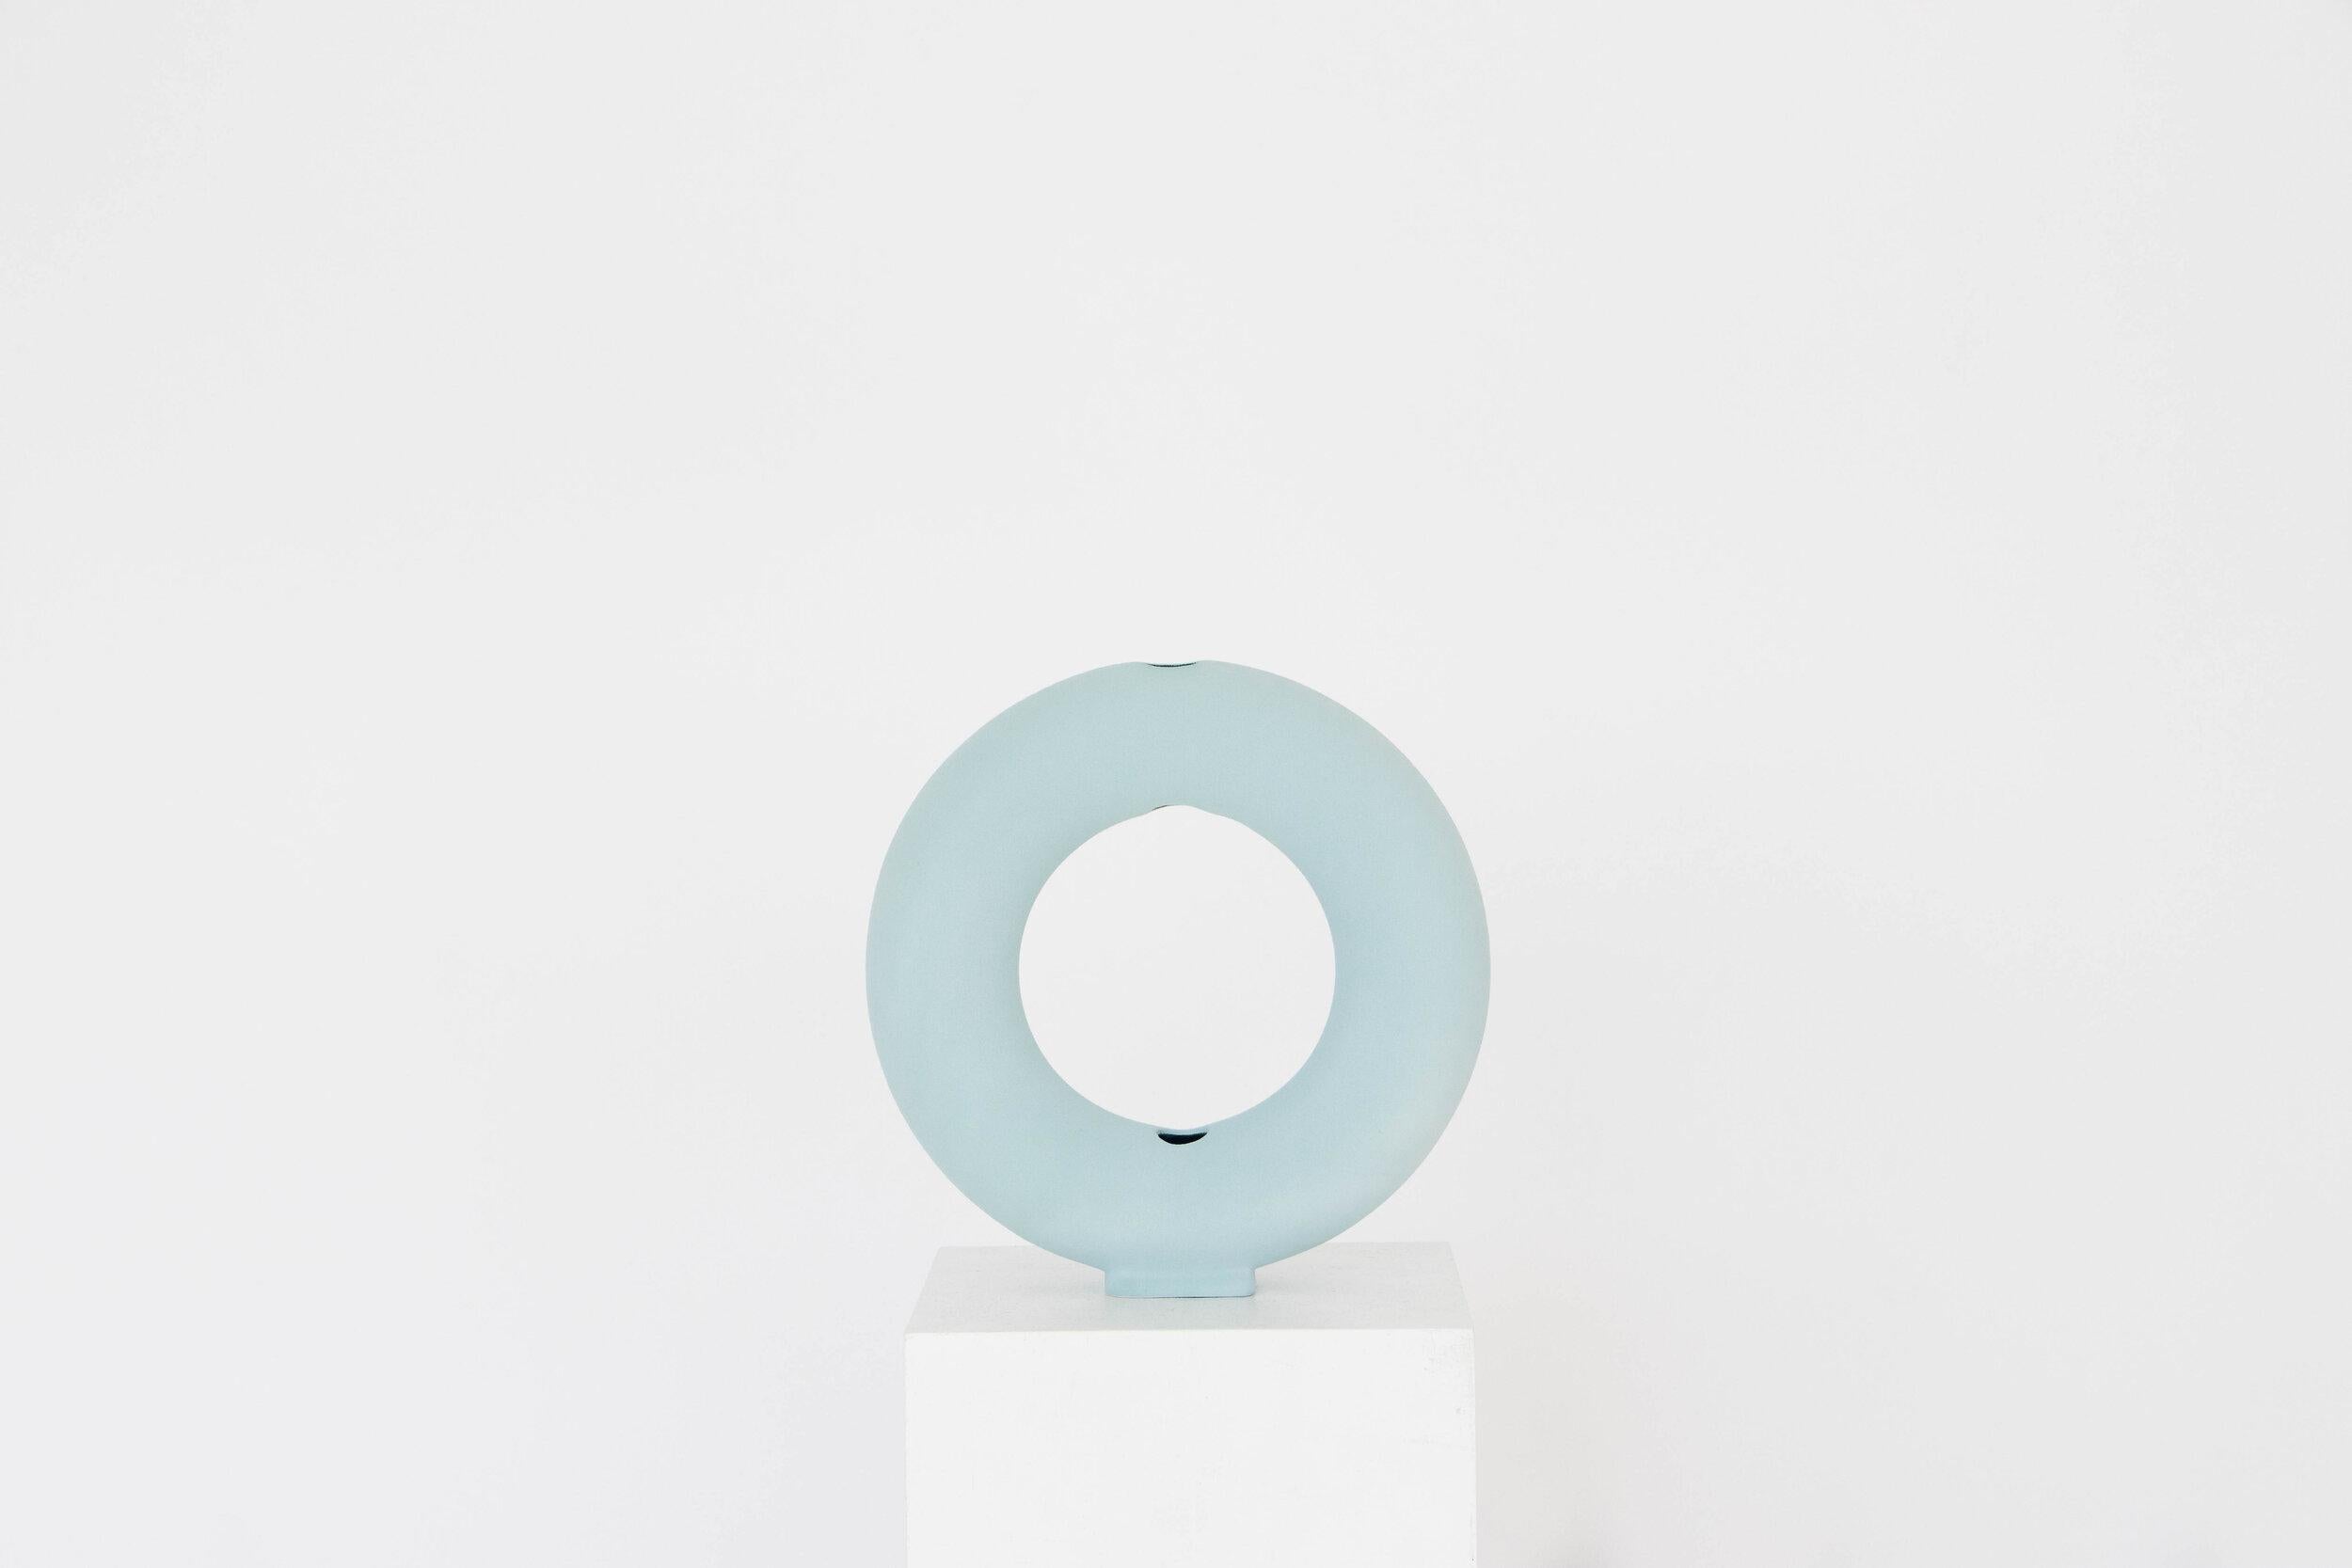 Ein Satz von 8 Baby Blue Matt Vacuum Vasen von Valeria Vasi
Handgefertigt in Barcelona, 2021
MATERIAL: Steingut, Ton
Abmessungen: 23 x 5,5 cm
Auch erhältlich in: Terrakotta, Weiß. 

Eine skulpturale Vase aus Steinzeug, die vollständig in Barcelona